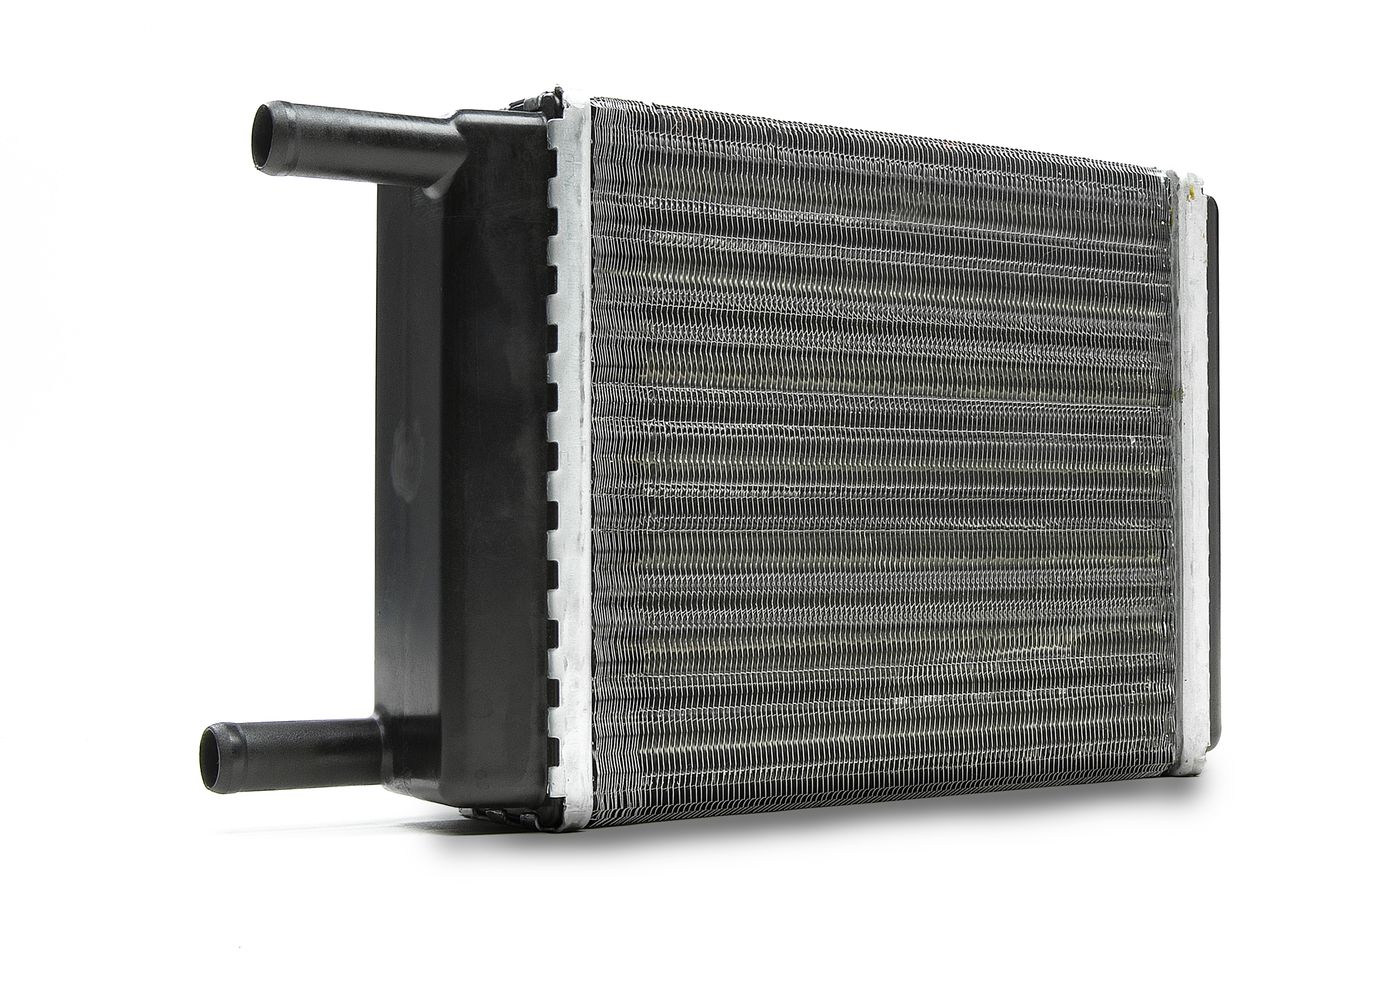 Wärmetauscher
Heater matrix
Échangeur de chaleur
Cambiador de 